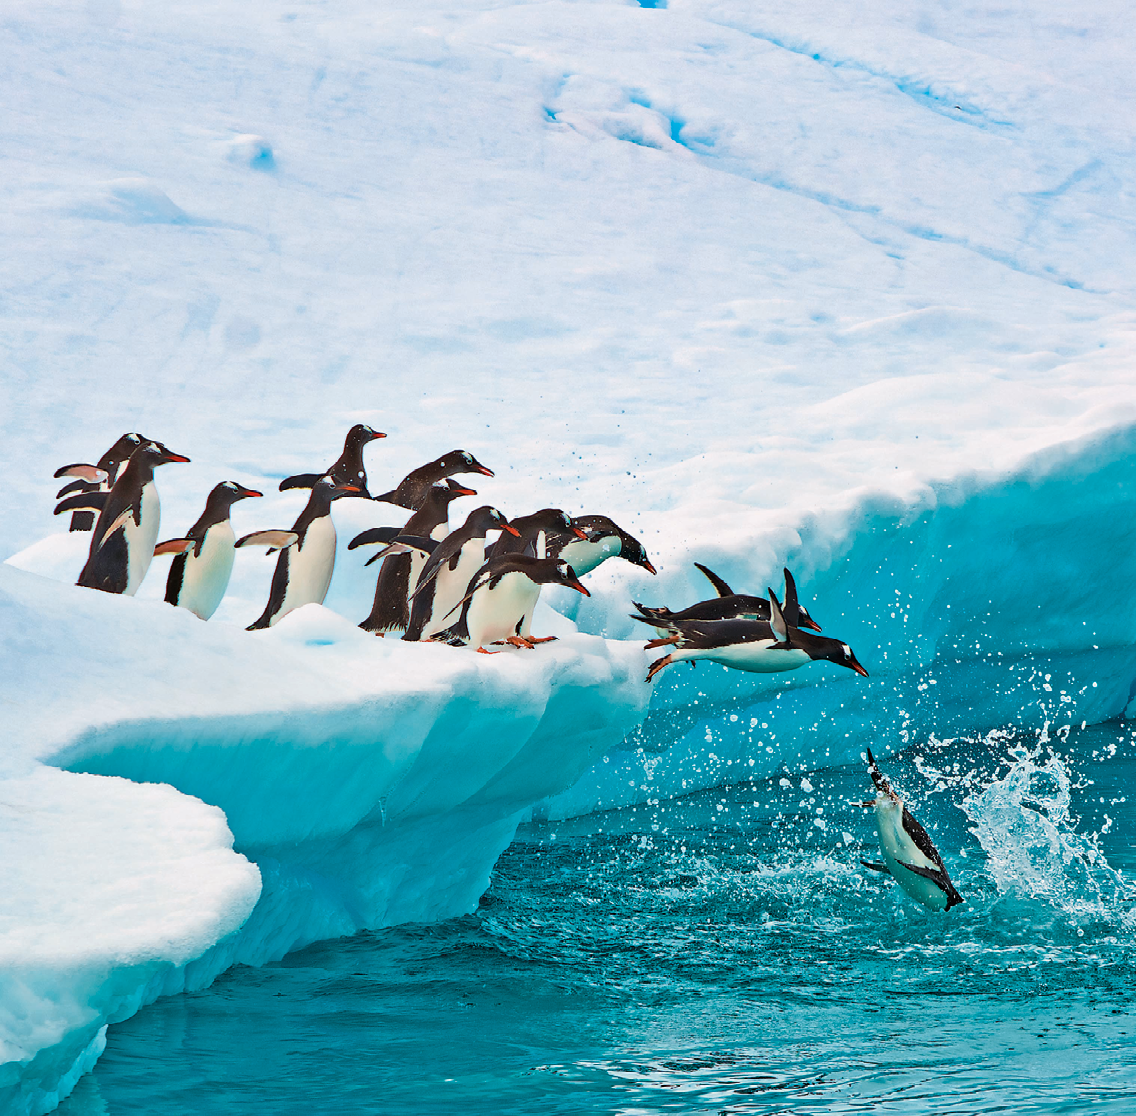 Fotografia. Grupo de pinguins em cima de um bloco de gelo. Eles estão com as asas para trás indo na direção da água. Os pinguins que estão na frente do grupo estão pulando na água, sendo que o primeiro deles atinge a água.